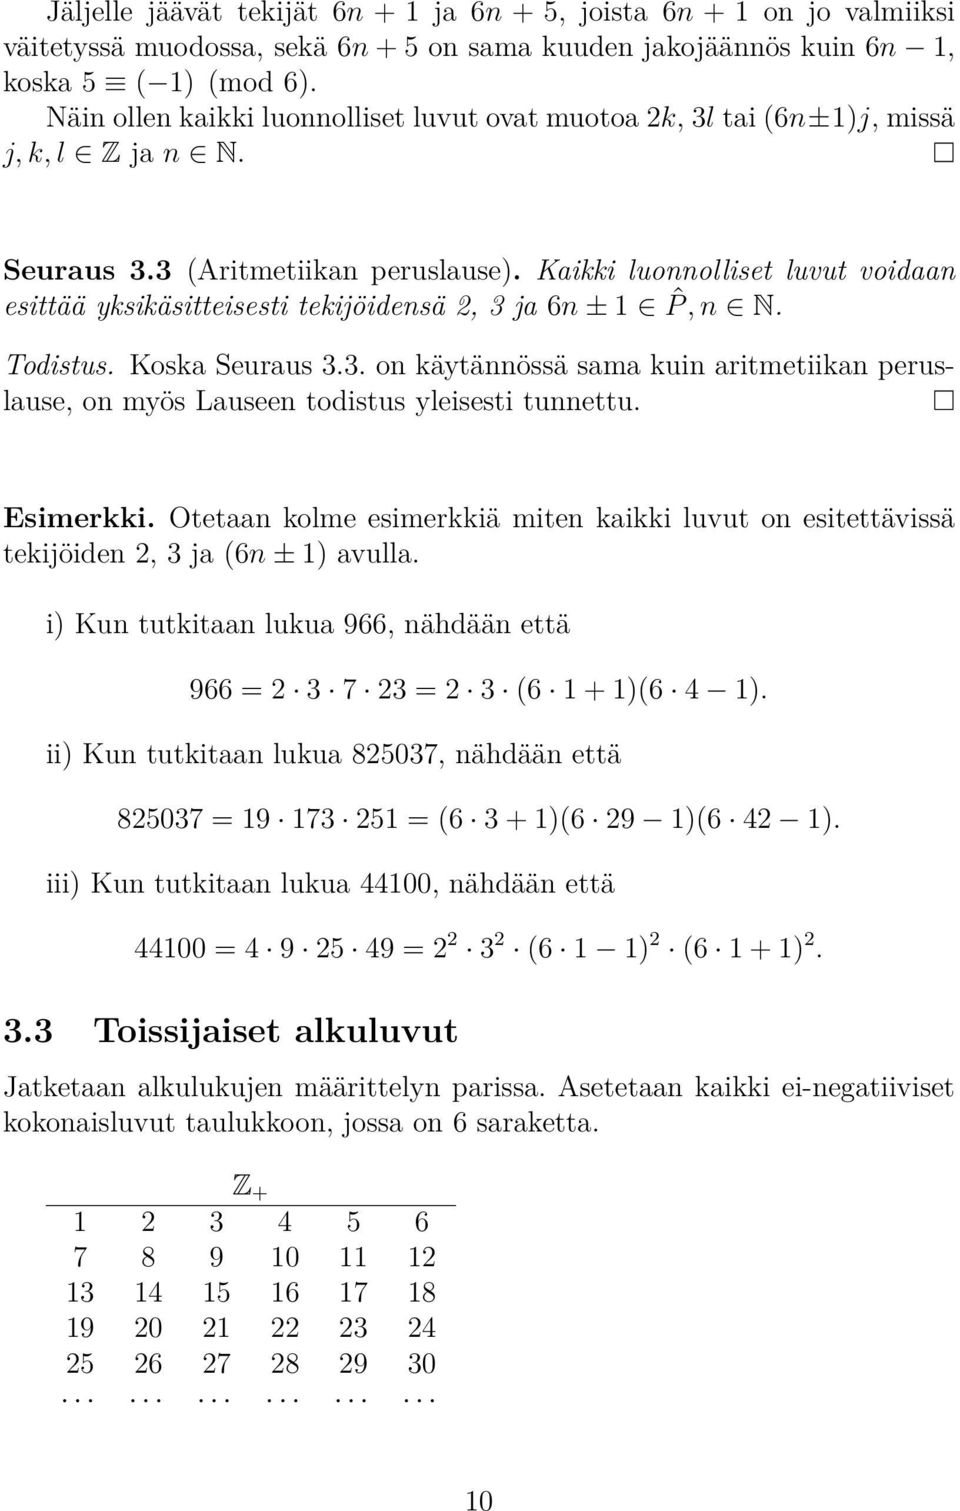 Kaikki luonnolliset luvut voidaan esittää yksikäsitteisesti tekijöidensä 2, 3 ja 6n ± 1 ˆP, n N. Todistus. Koska Seuraus 3.3. on käytännössä sama kuin aritmetiikan peruslause, on myös Lauseen todistus yleisesti tunnettu.